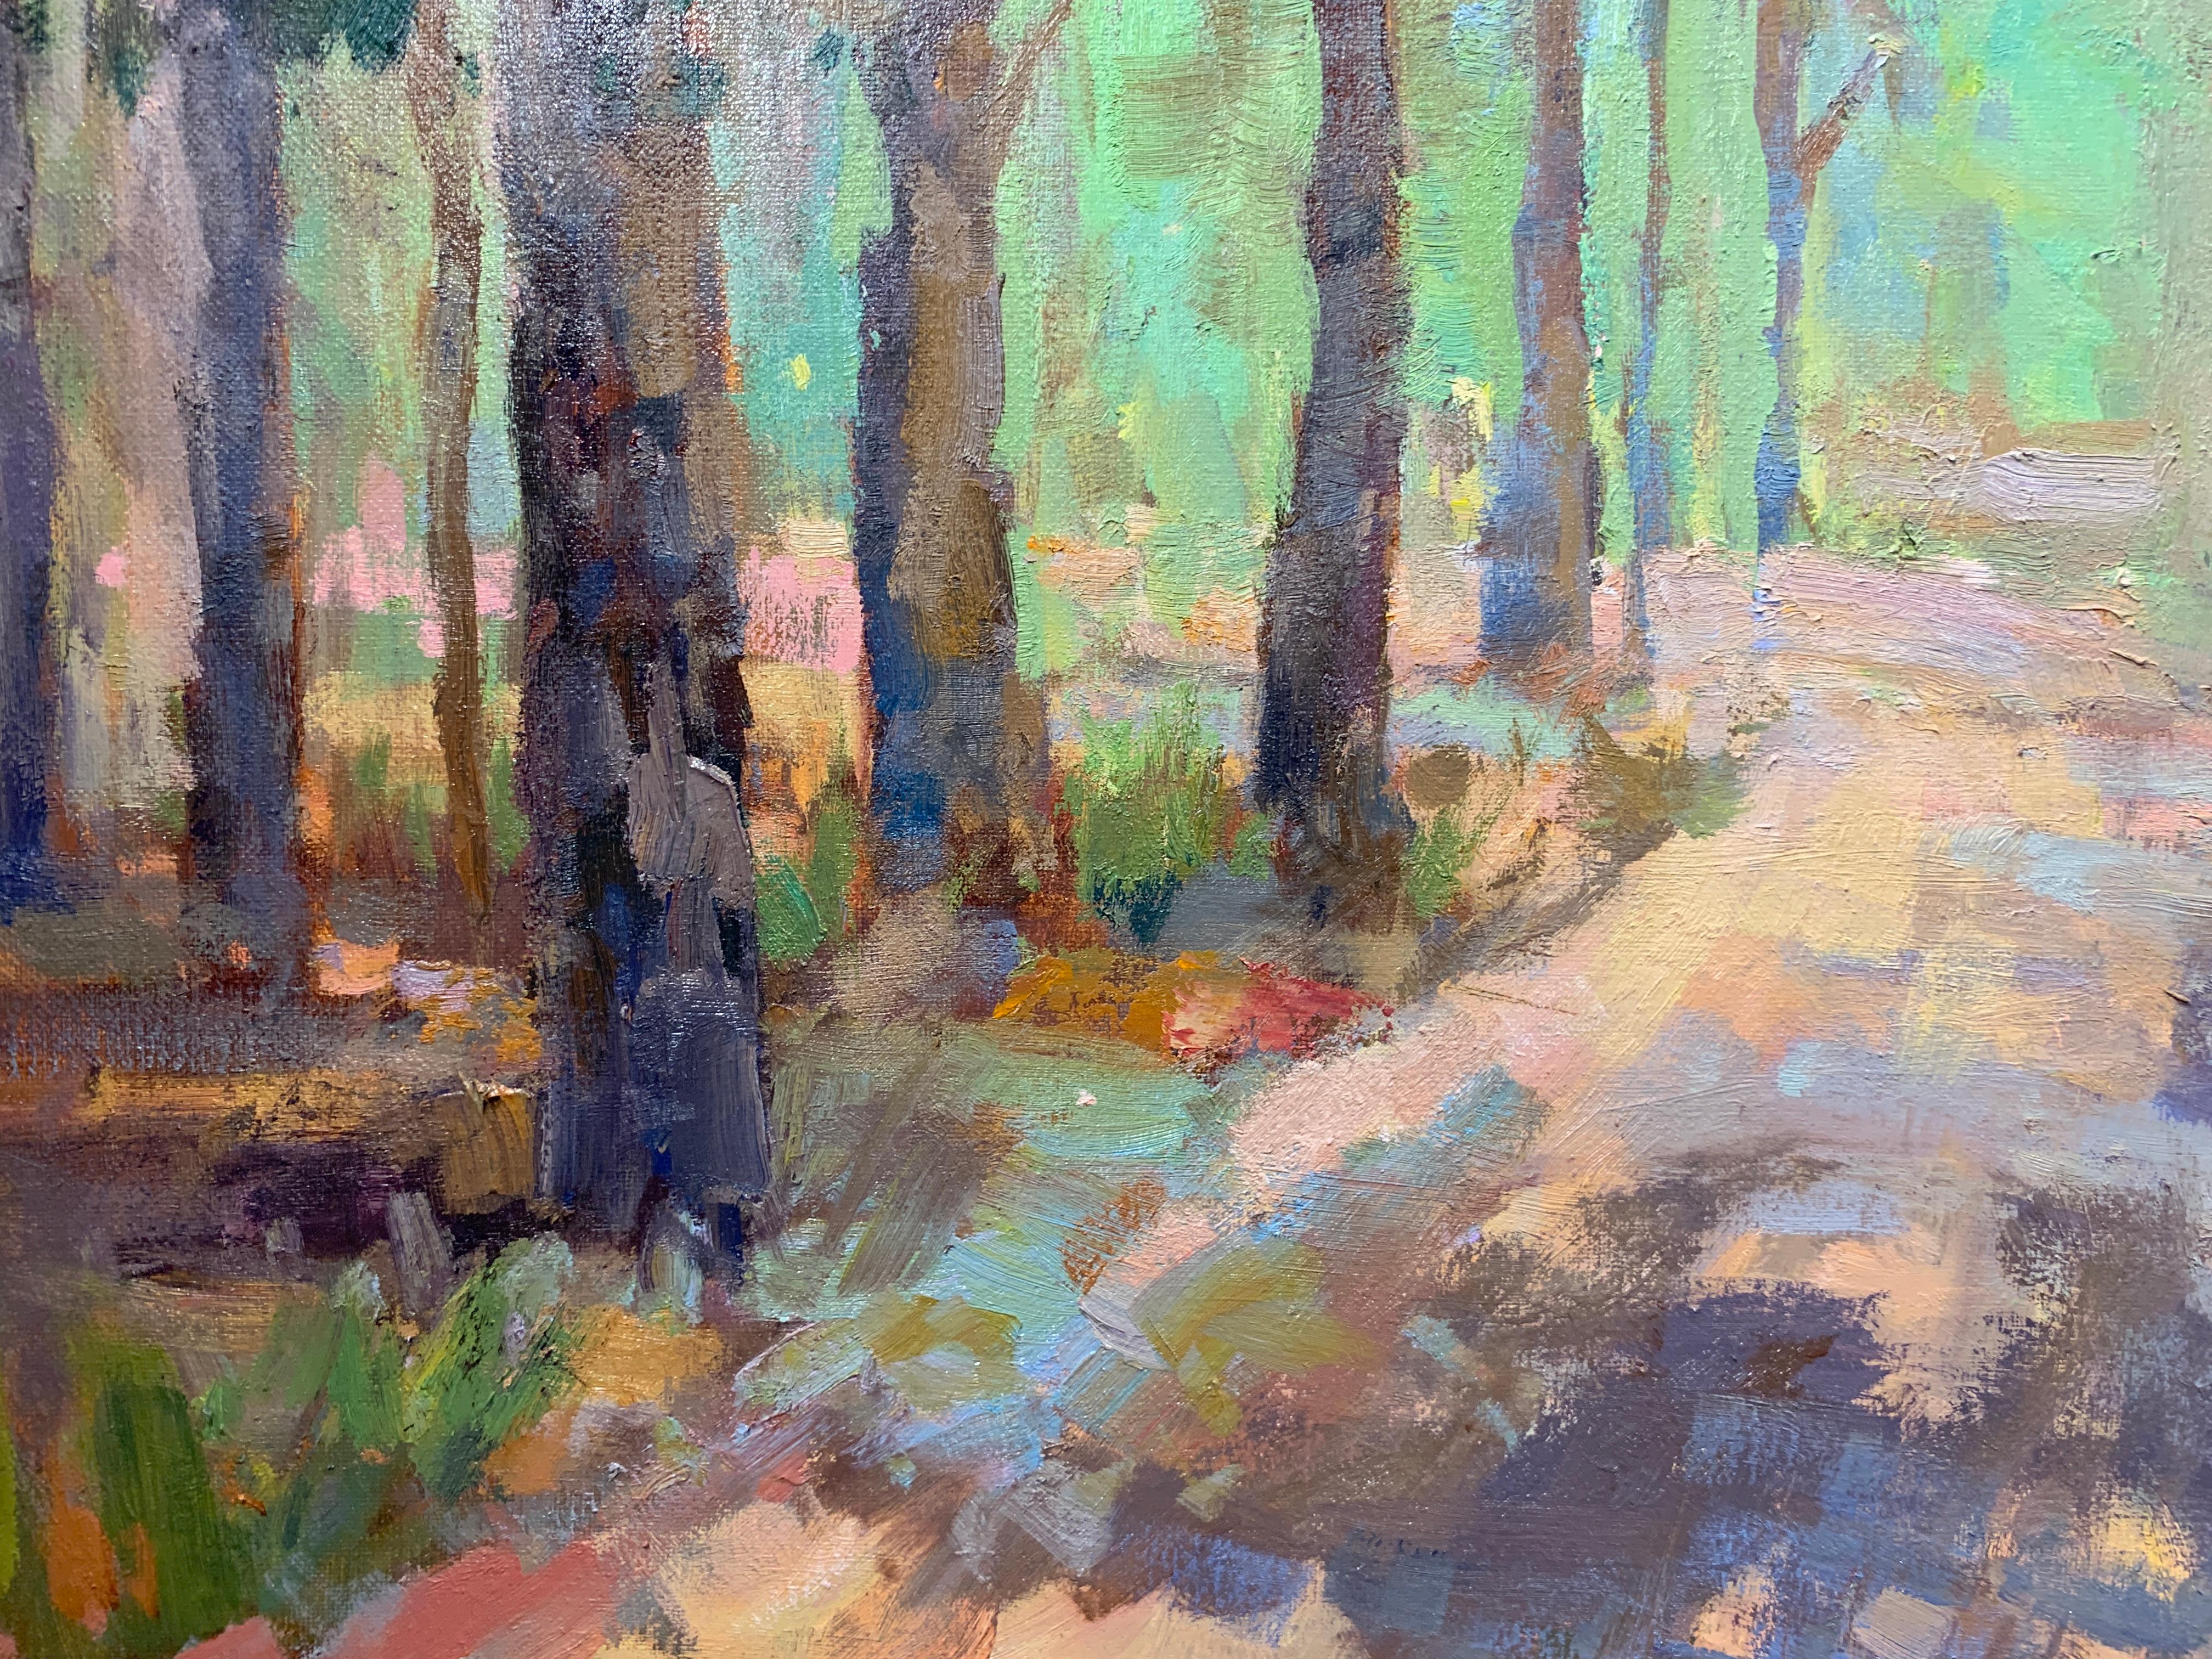 Southern Pines von Millie Gosch, gerahmtes impressionistisches Landschaftsgemälde 4